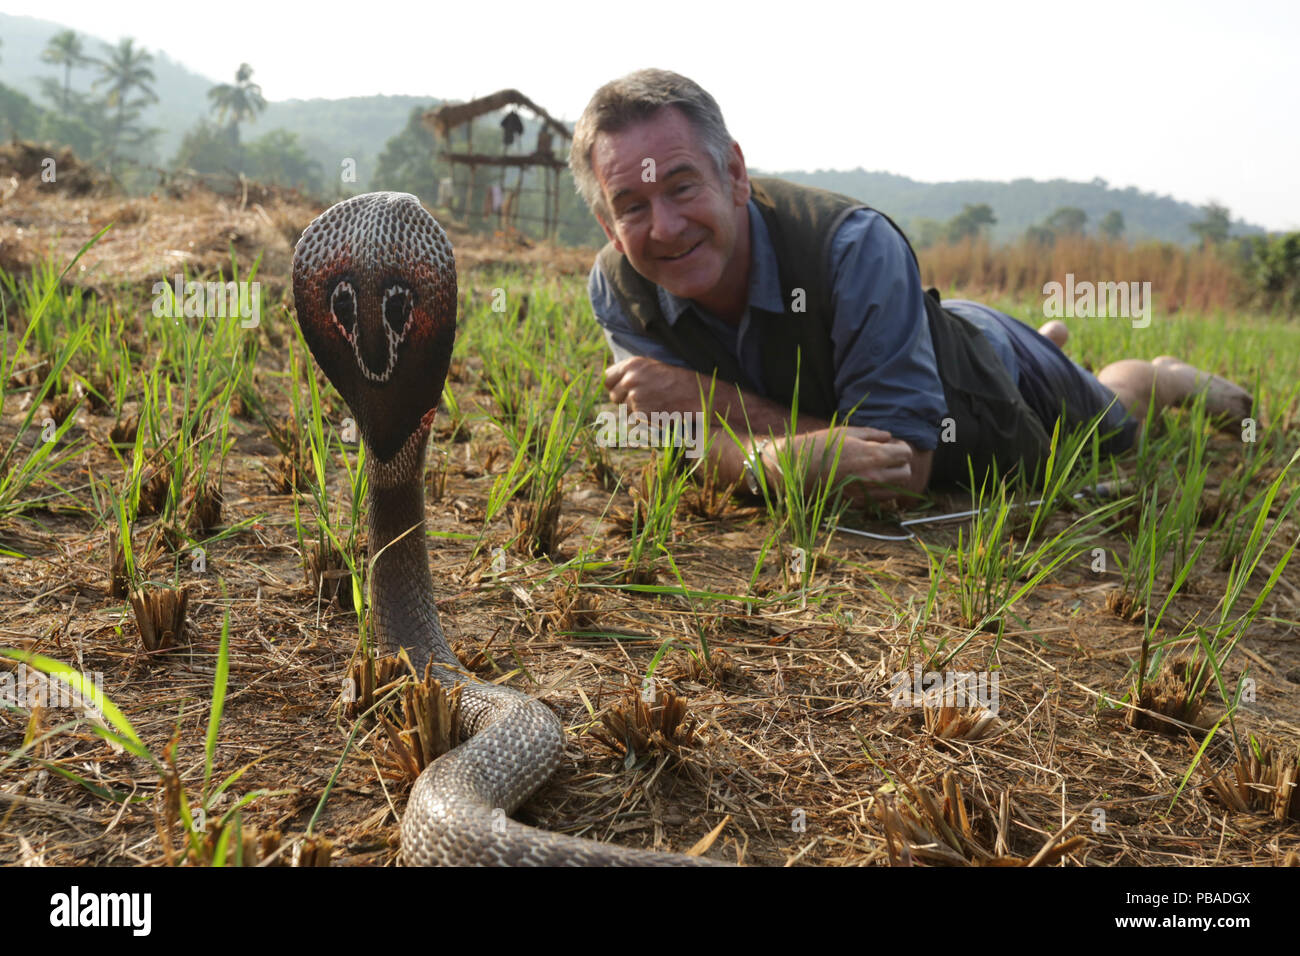 Presenter Nigel Marven with Spectacled cobra (Naja naja) in a paddy field, India. November 2015. Model released. Stock Photo